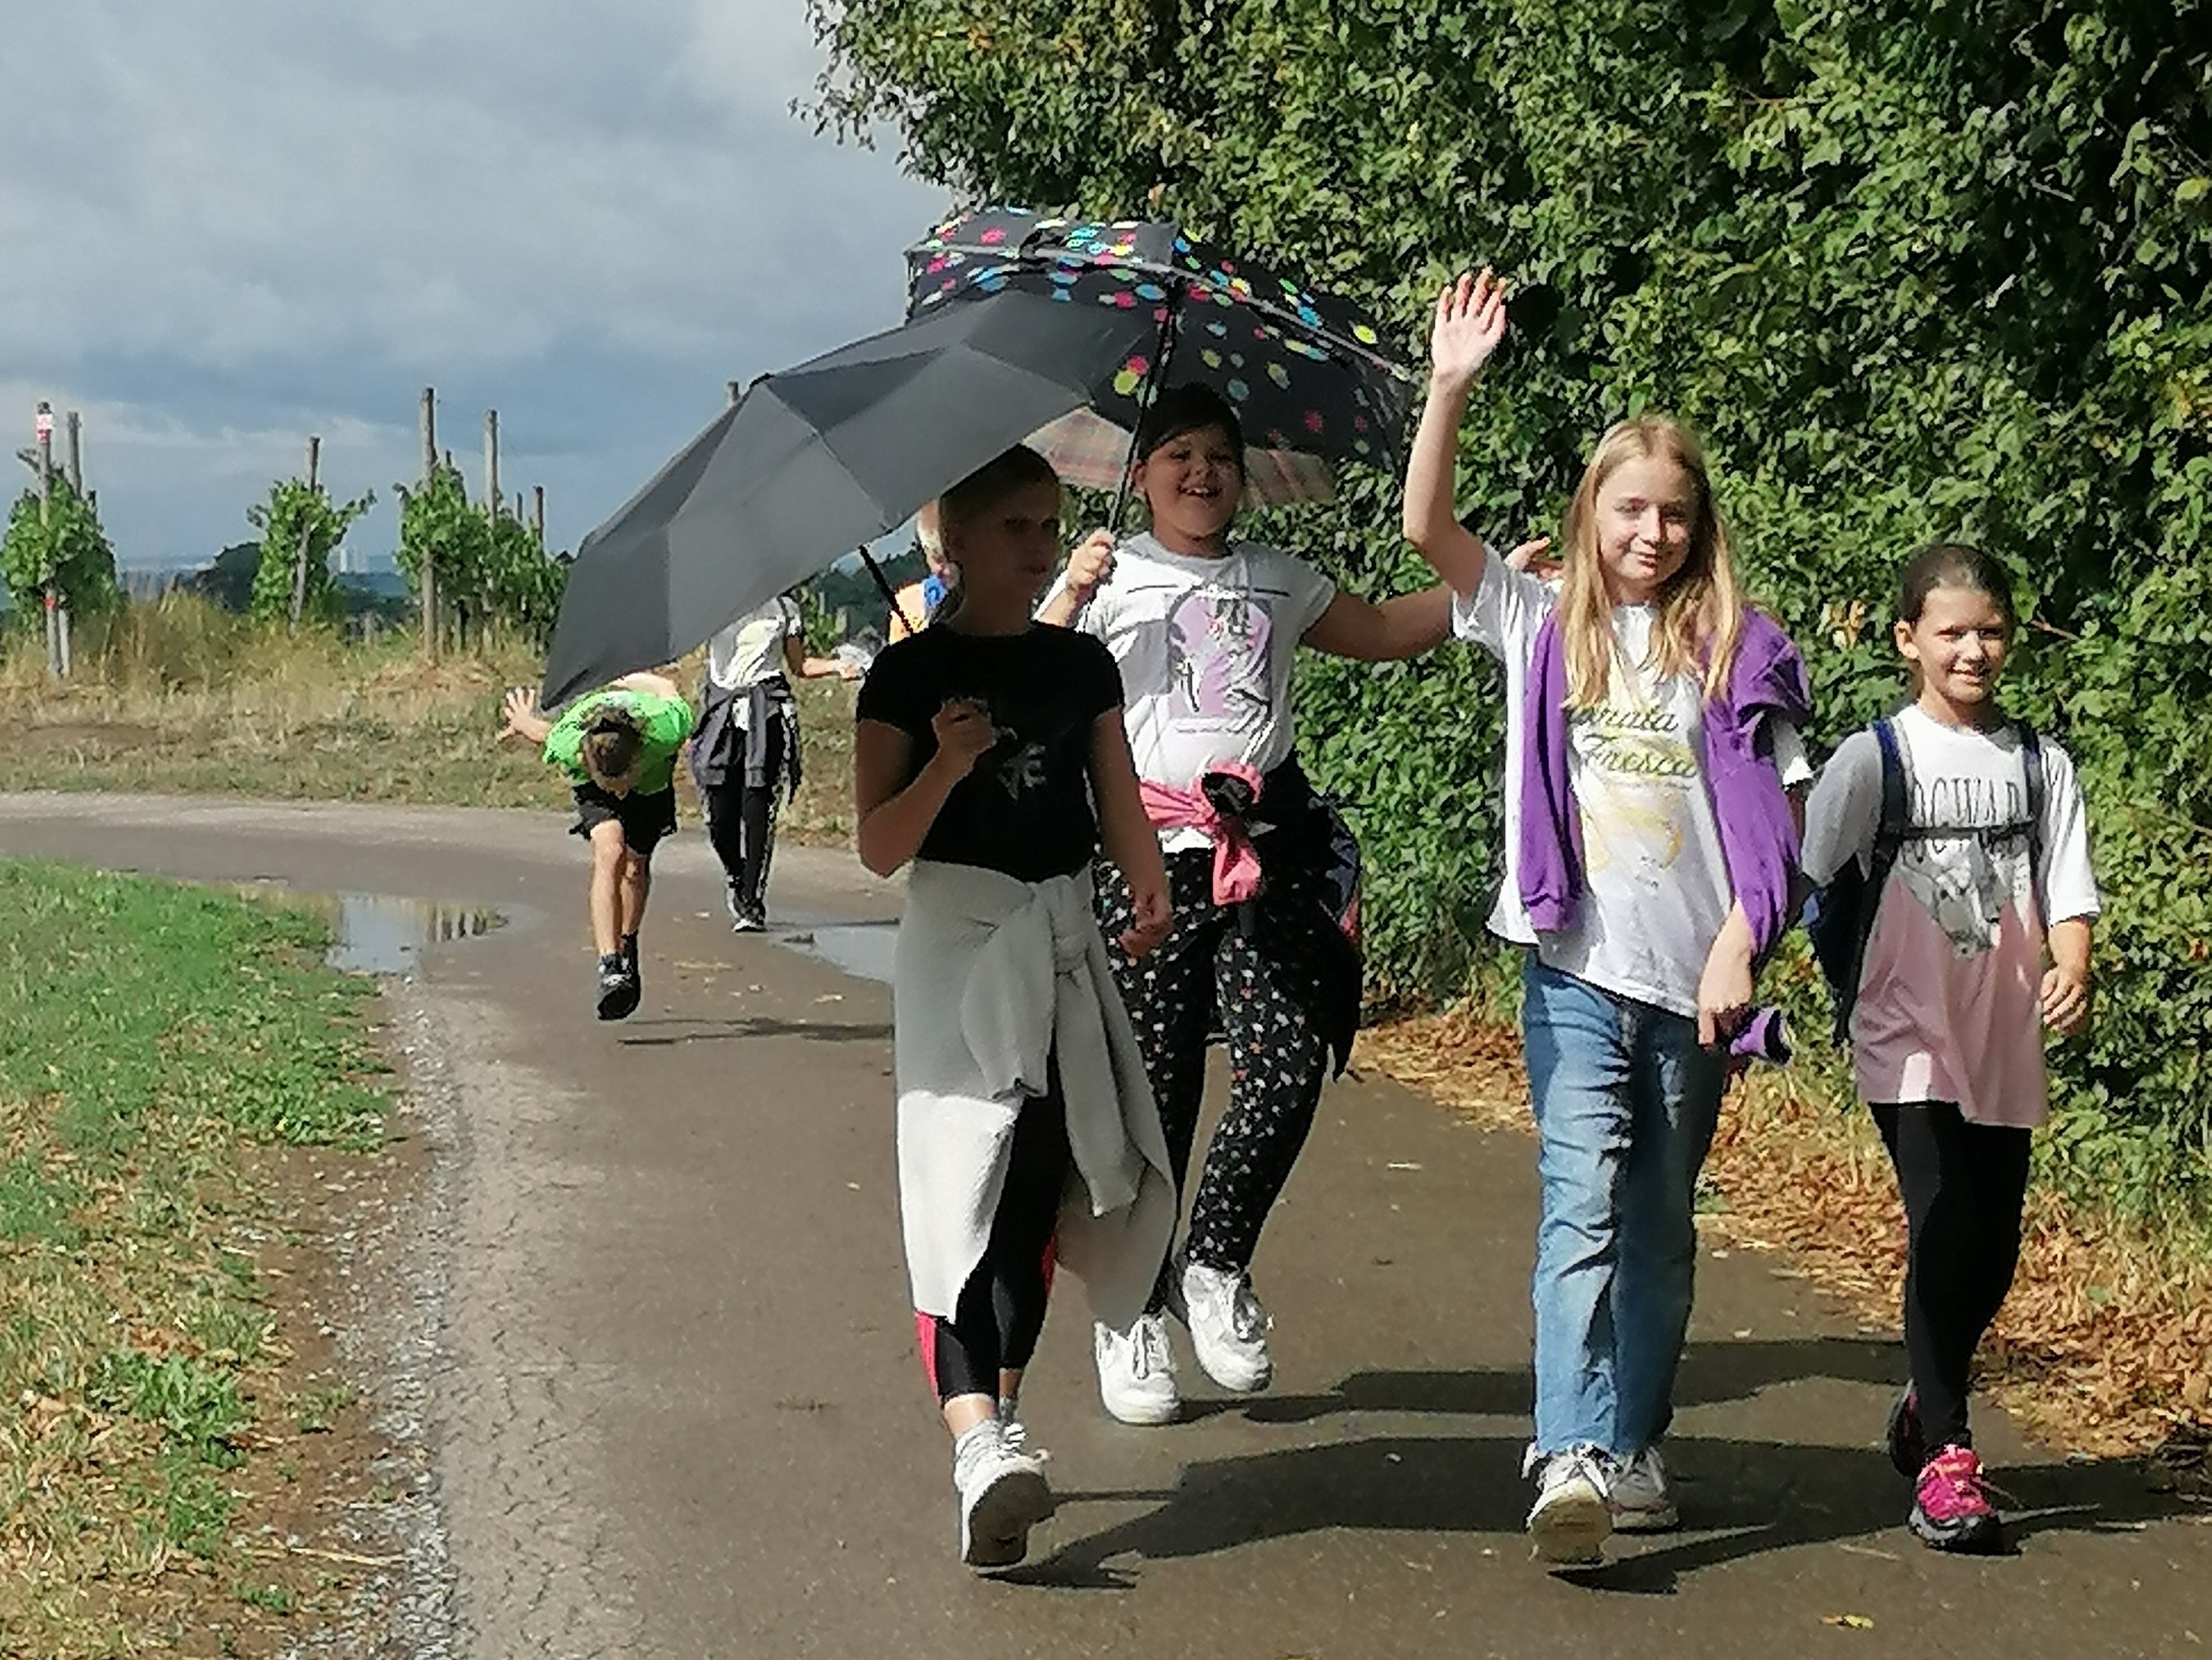 Schüler beim Wandern z.T. mit Regenschirmen